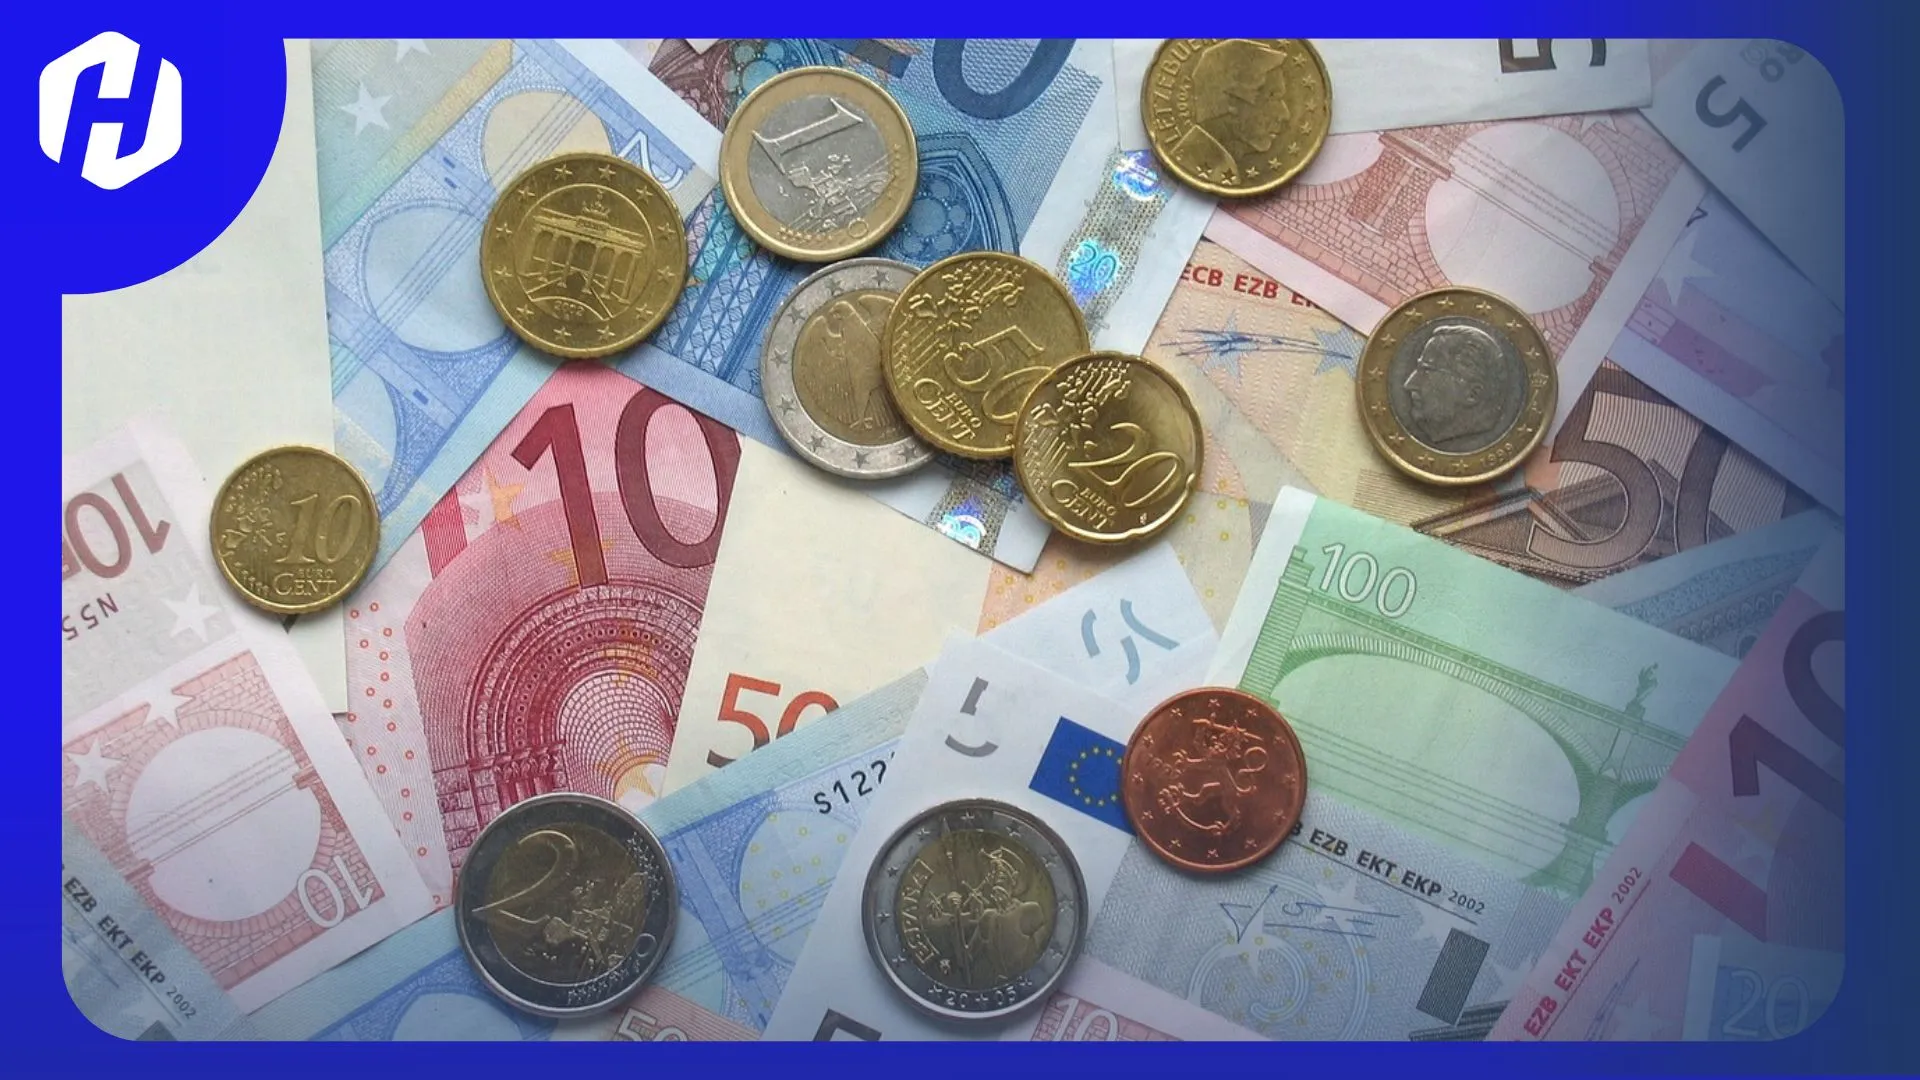 Daftar 19 Negara yang Menggunakan Mata Uang Euro